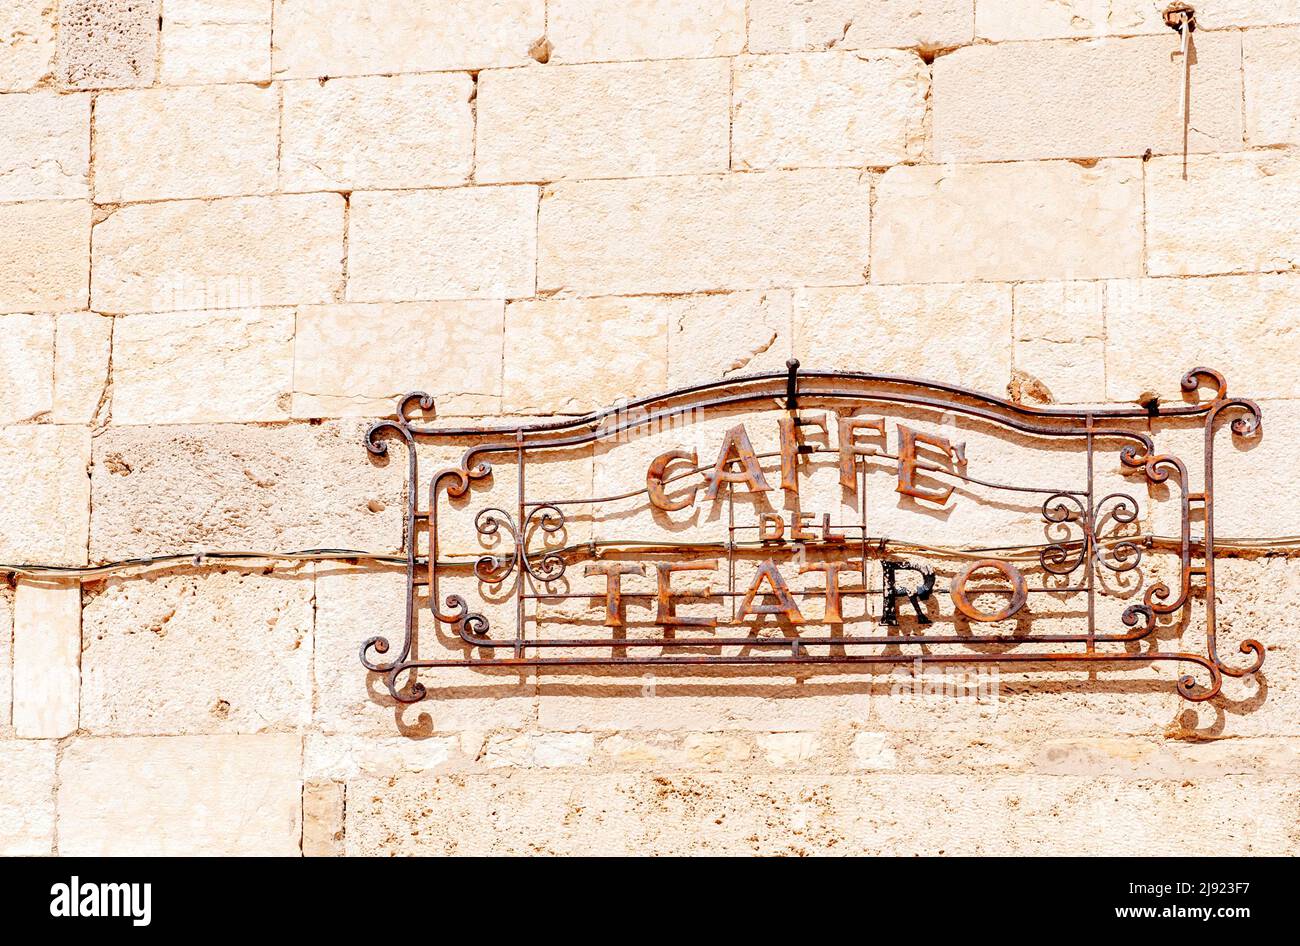 Caffe del Teatro, storico cartello in ferro battuto in Piazza del Duomo di Spoleto, provincia di Perugia, Umbria, Italia Foto Stock